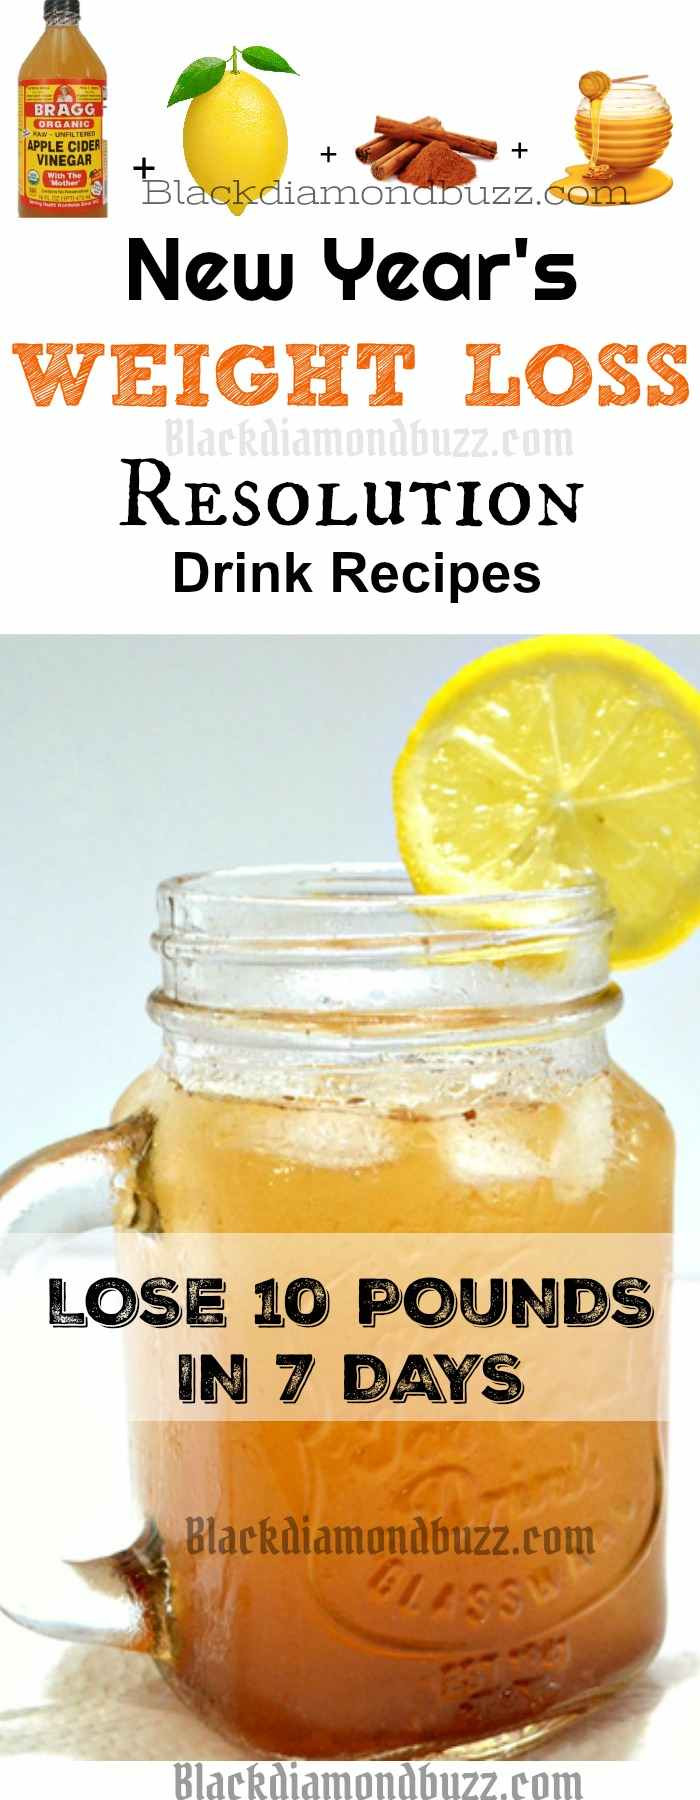 Weight Loss Detox Drinks Recipes
 DIY Apple Cider Vinegar Detox Drink Recipe for Fat Burning